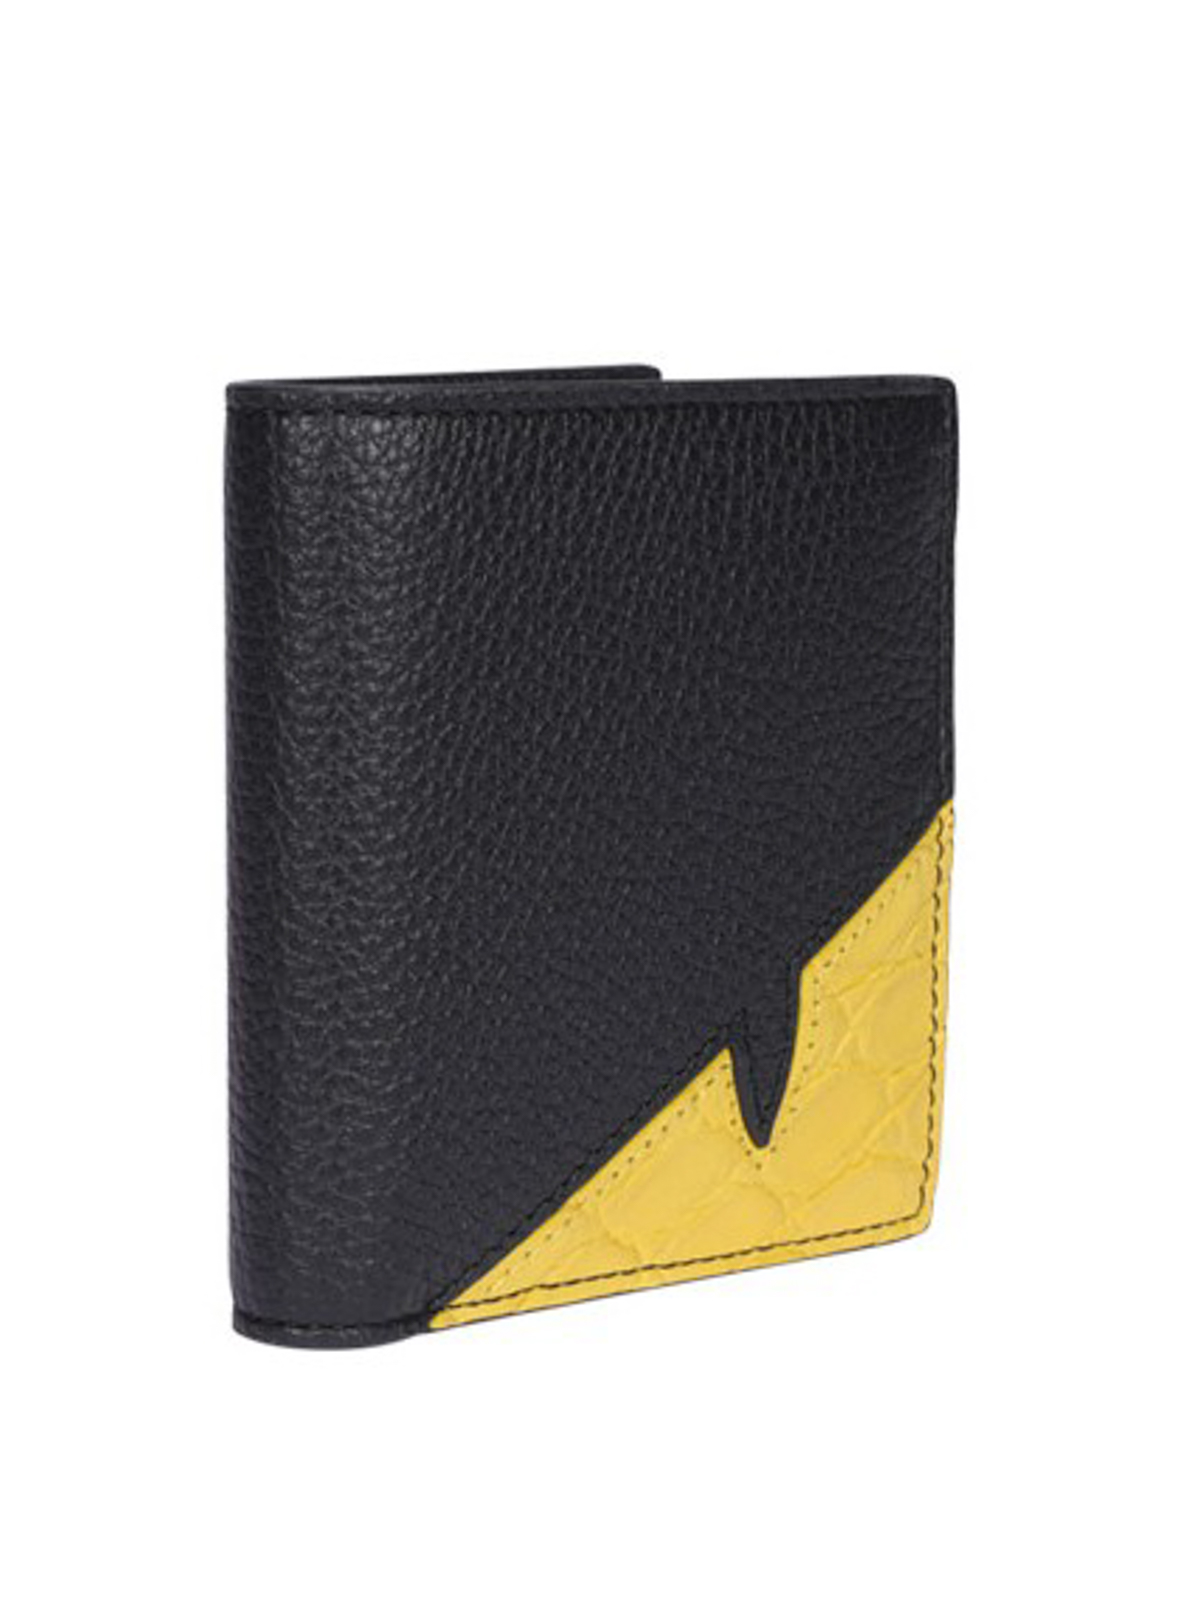 Wallets & purses Fendi - Bad Bugs leather bifold wallet